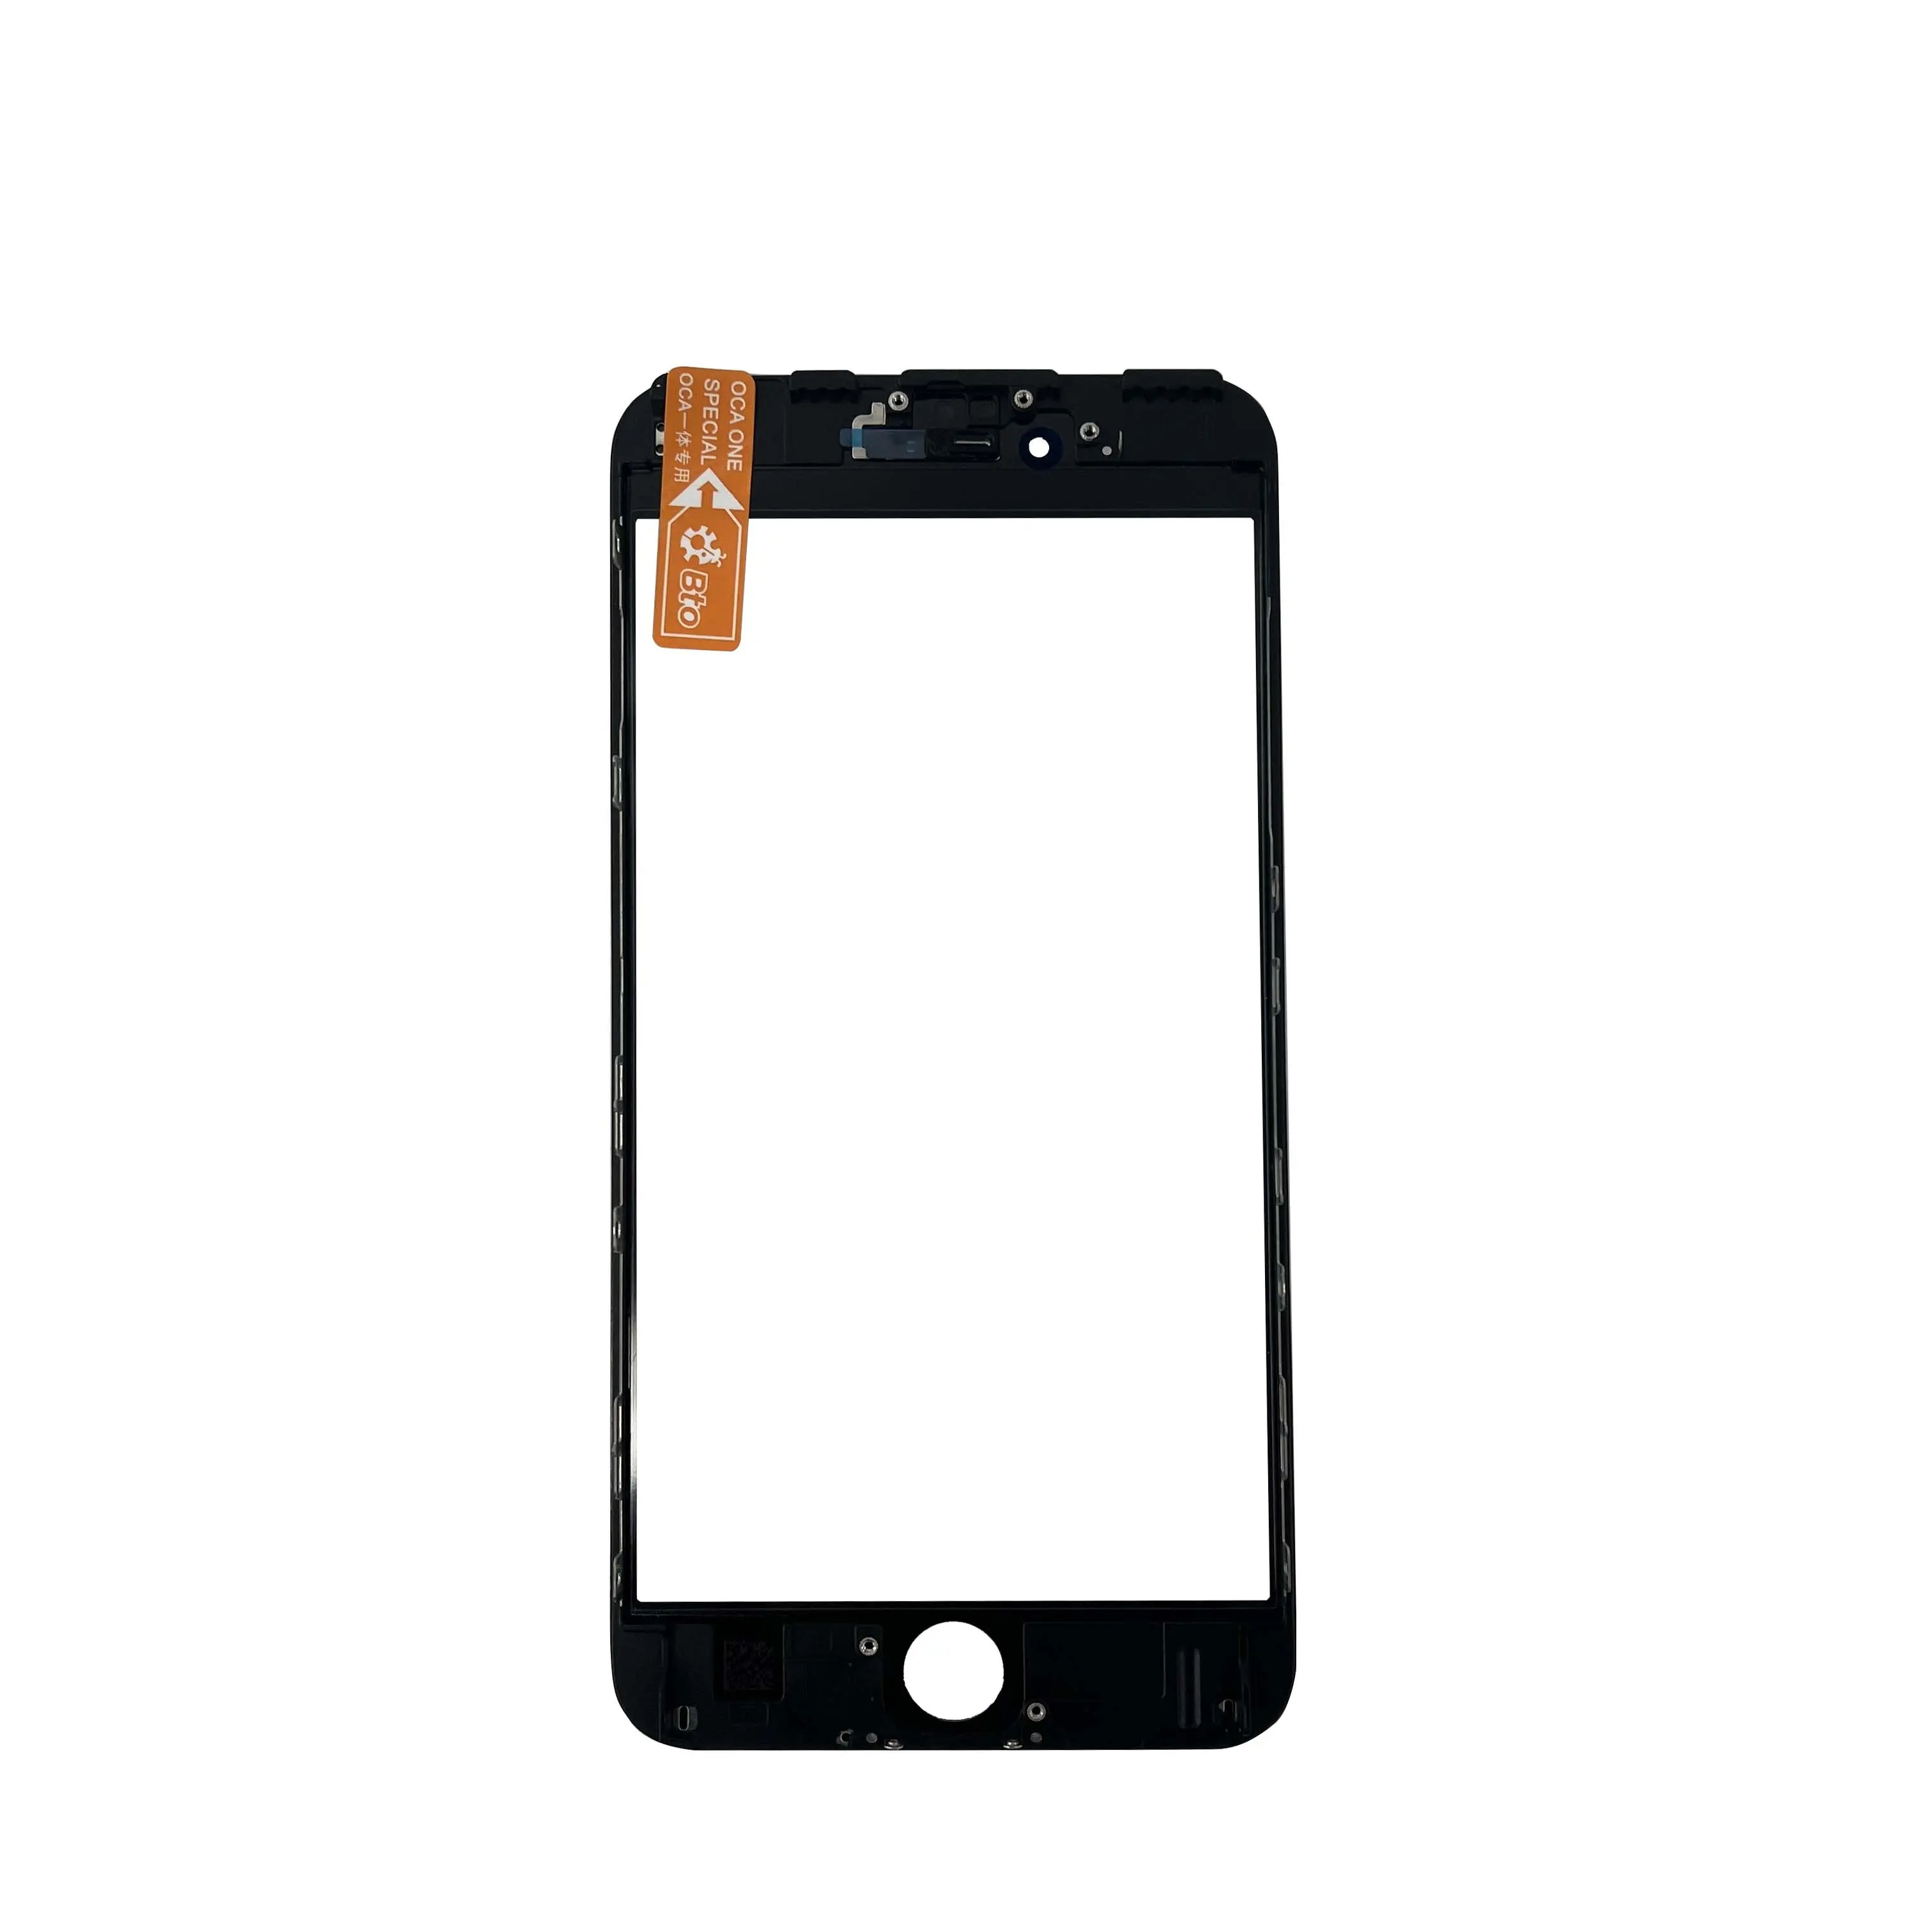 KULIオリジナル品質3in1外部スクリーン交換用iPhone 6 6S 6p6spモバイルLCDタッチガラスOCA偏光子フレーム